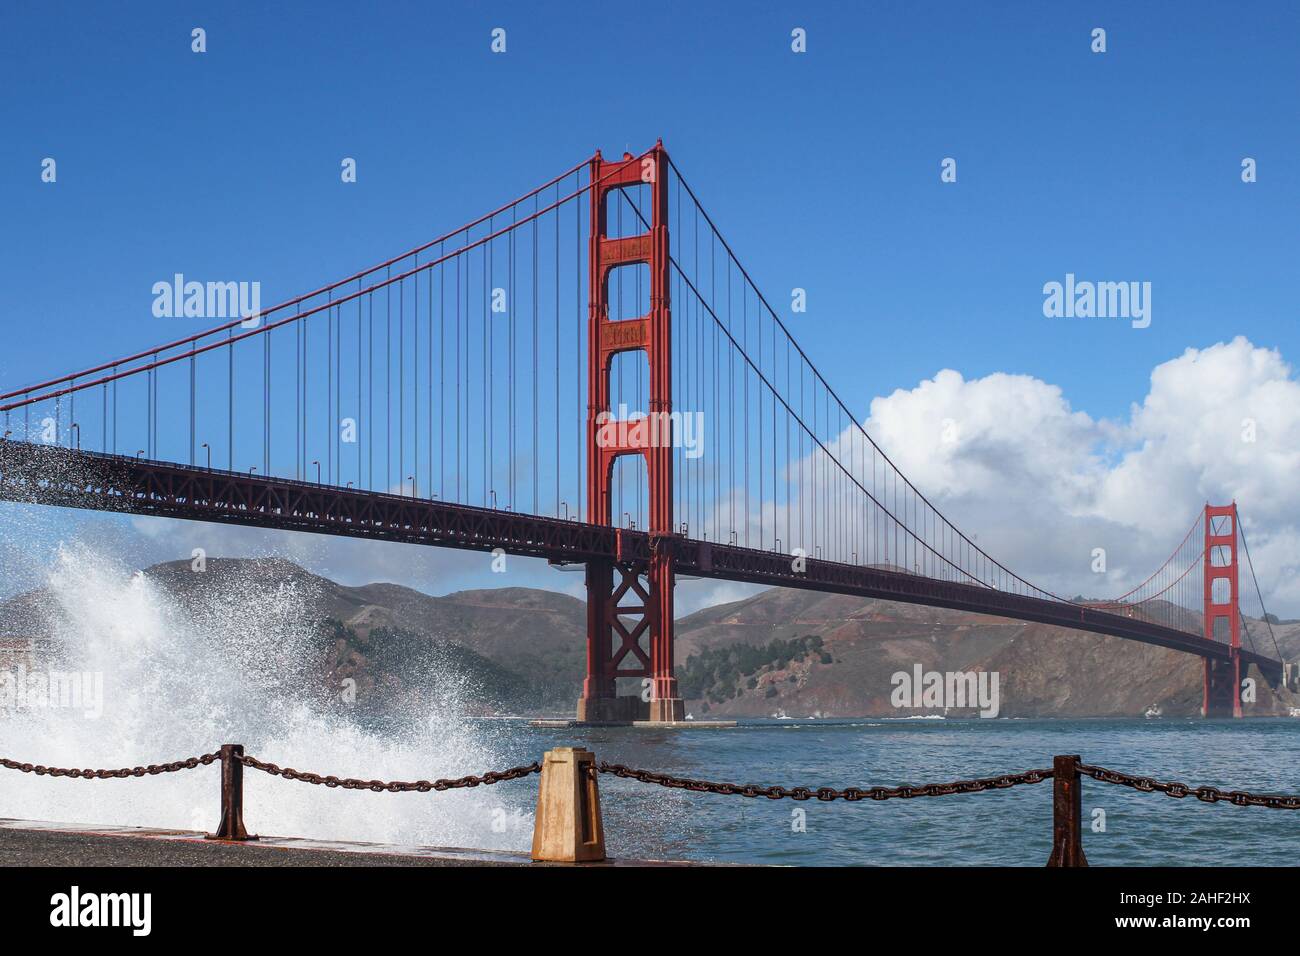 De vagues se brisant sur la digue avec orange international Golden Gate Bridge en arrière-plan de San Francisco, États-Unis d'Amérique Banque D'Images